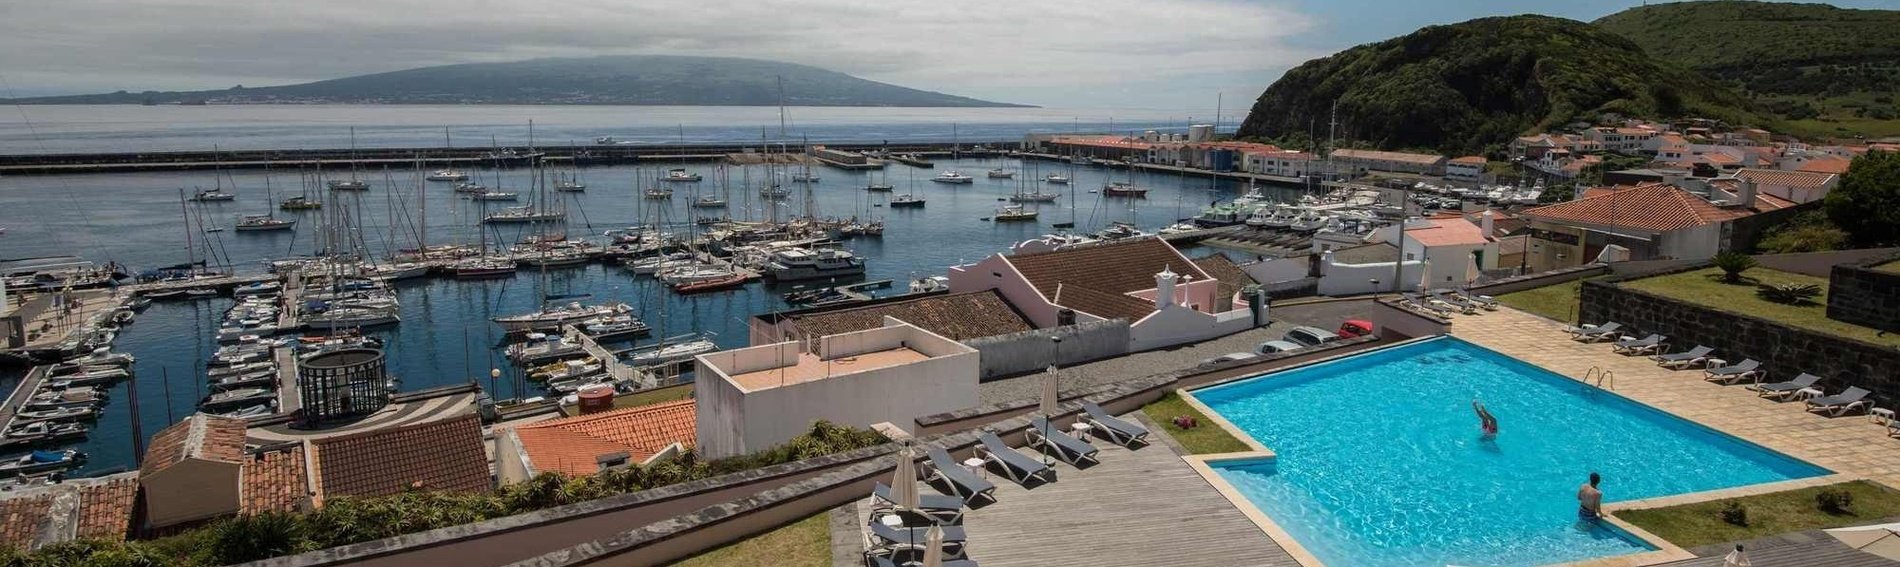 uma piscina ao lado de um porto com barcos